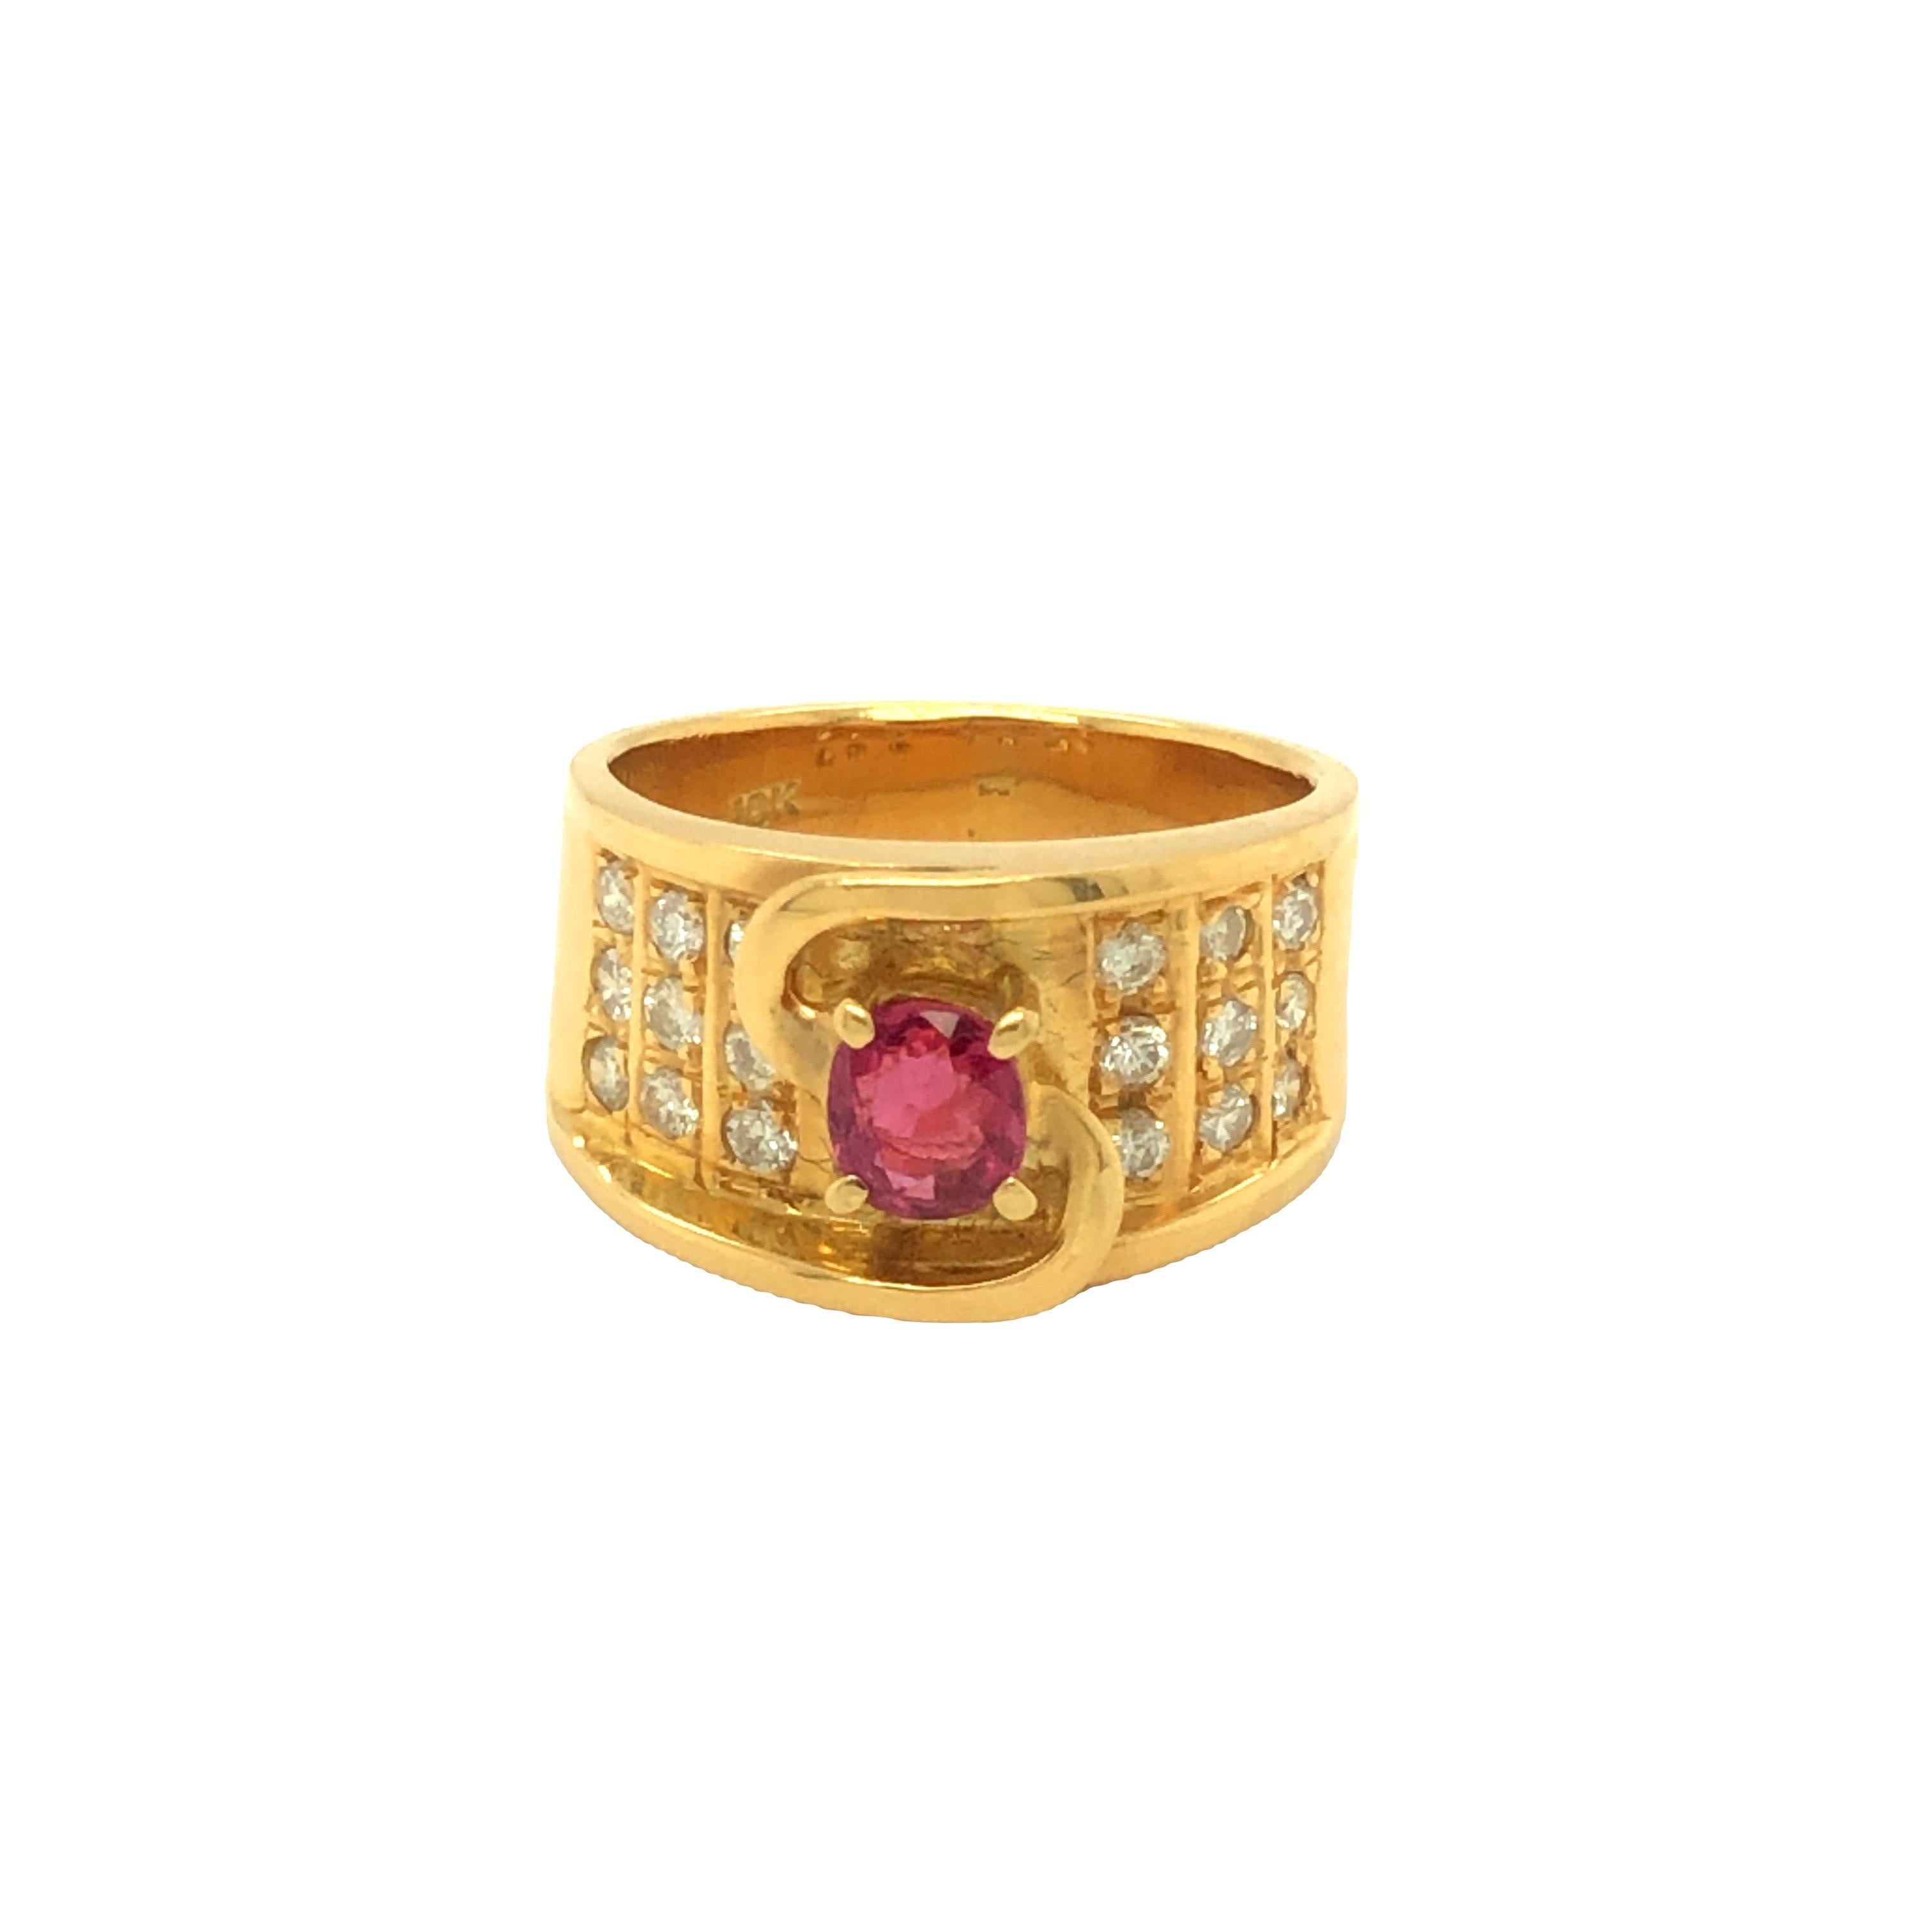 Der Retro-Ring enthält einen ovalen Rubin von 0,45 Karat mit einer lebhaften roten Farbe. Er ist mit runden Diamanten im Brillantschliff mit einem Gesamtgewicht von 0,40 Karat verziert. Kunstvoll aus 18 Karat Gelbgold gefertigt und bereit zum